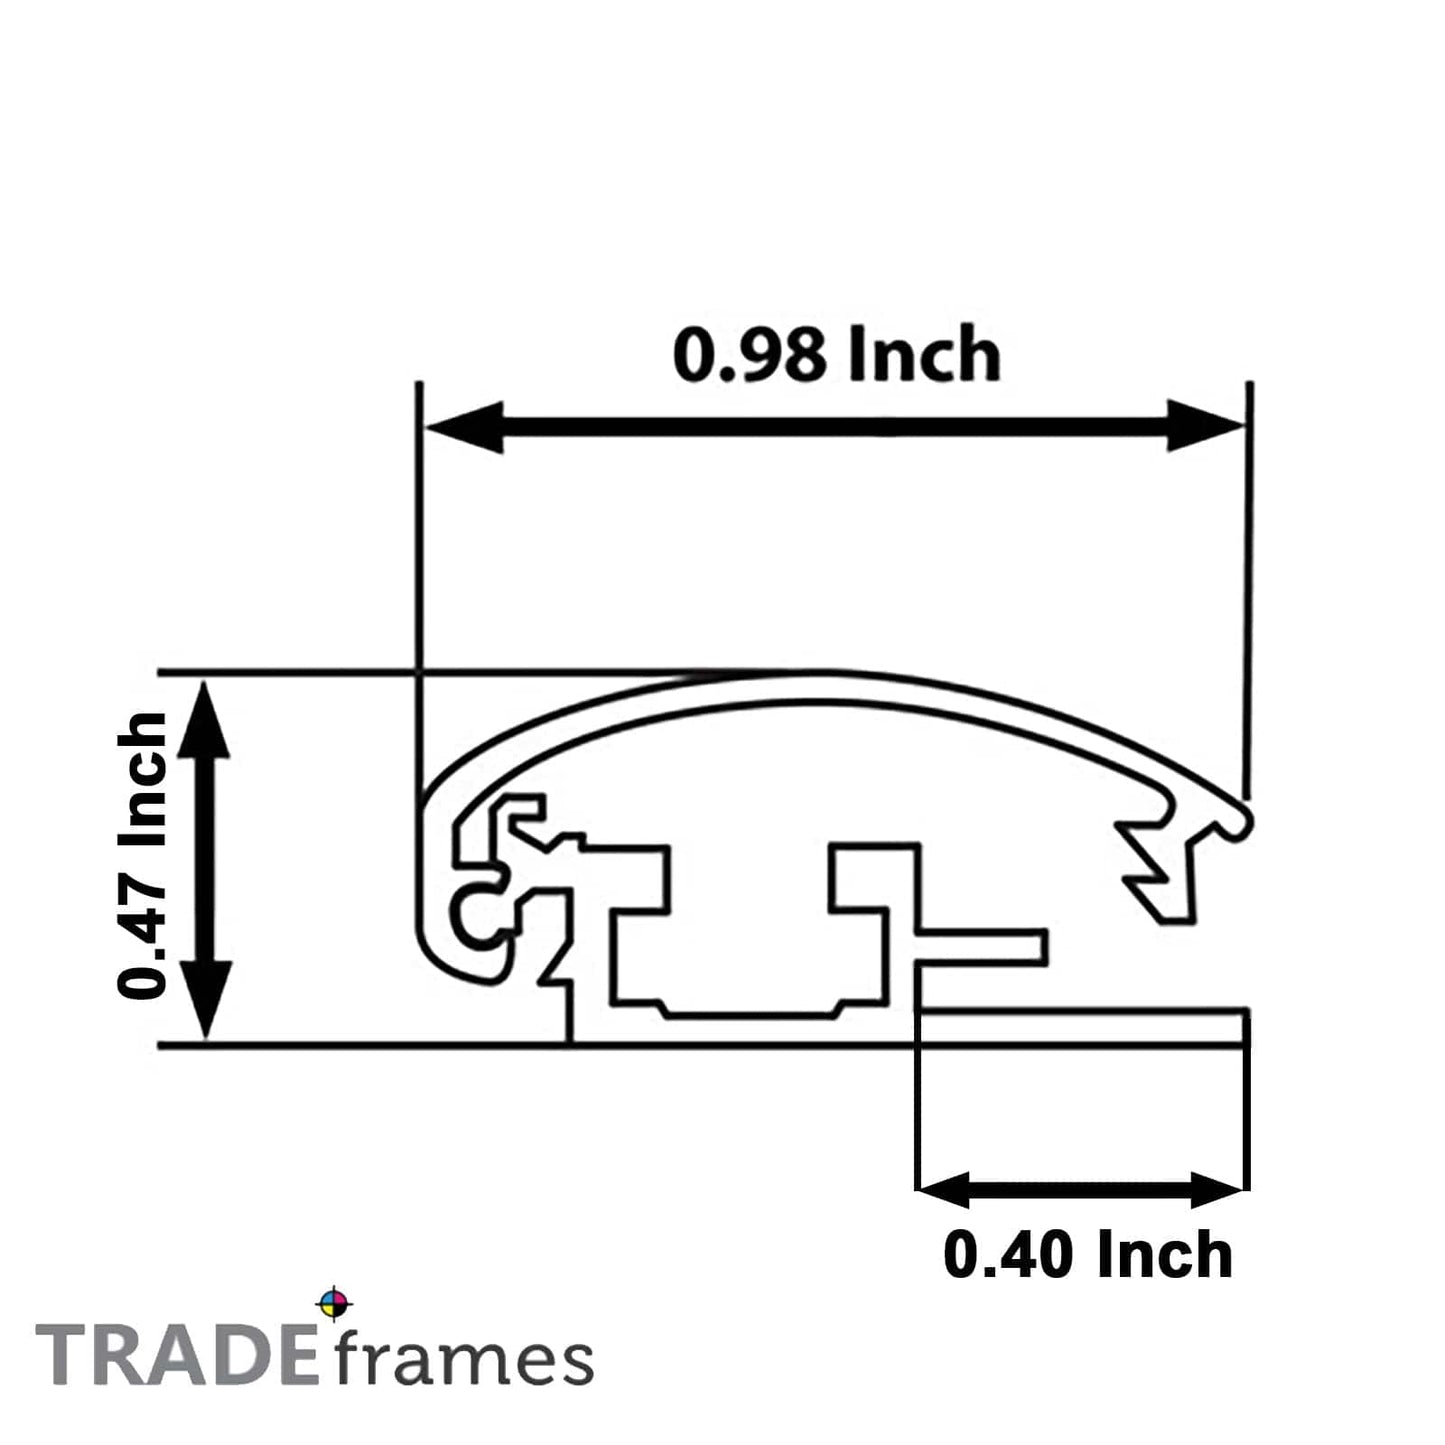 8.5x11 Gold TRADEframe Snap Frame - 1" Profile - Snap Frames Direct